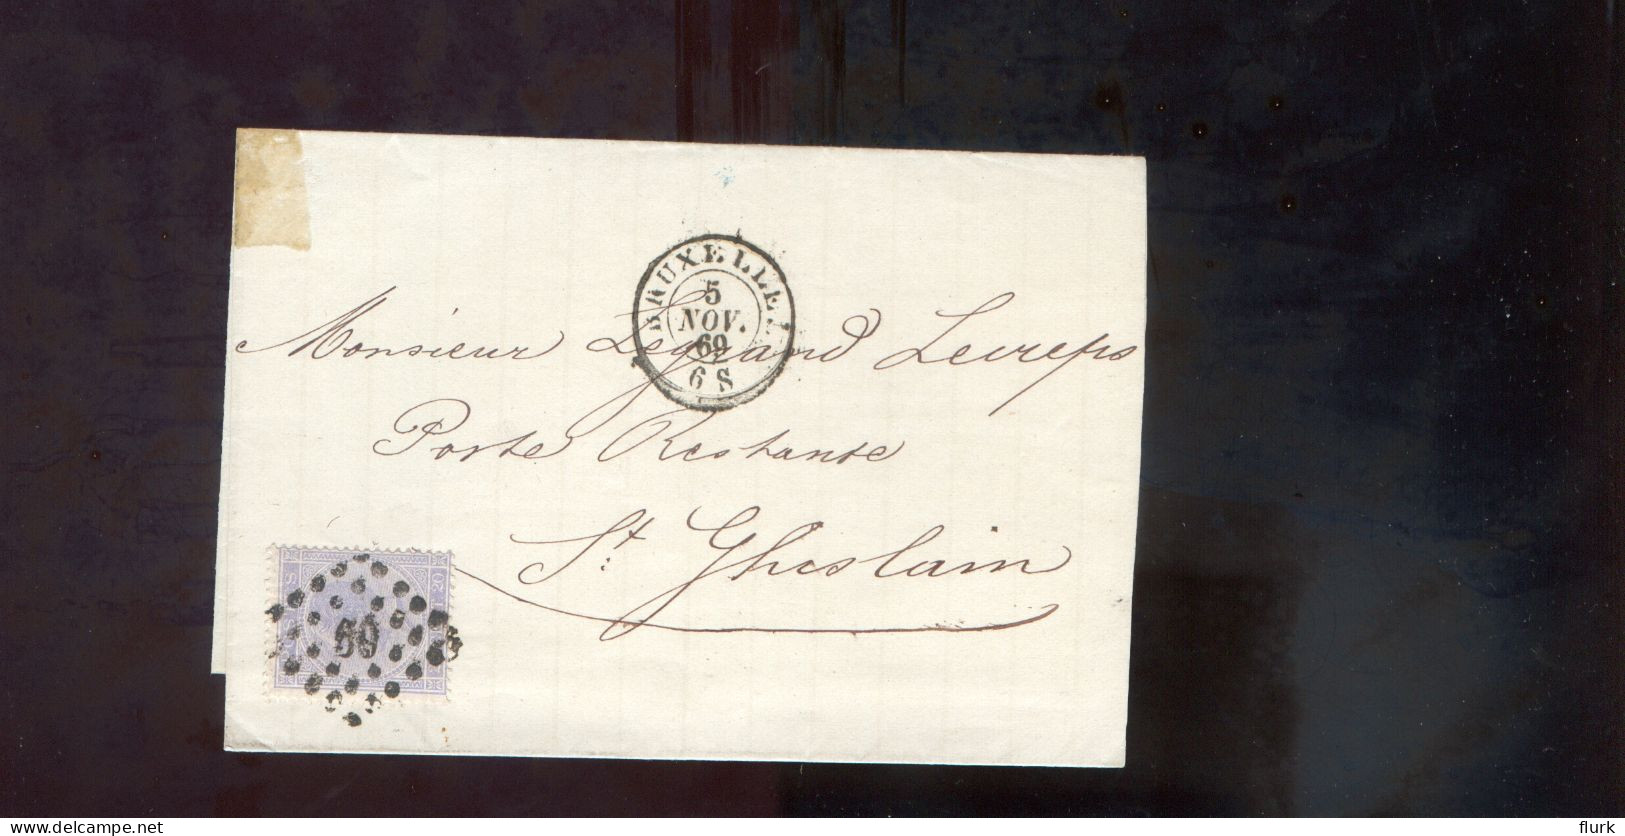 België OCB18 Gestempeld Op Brief Bruxelles-St. Ghislain 1869 Perfect (2 Scans) - 1865-1866 Linksprofil